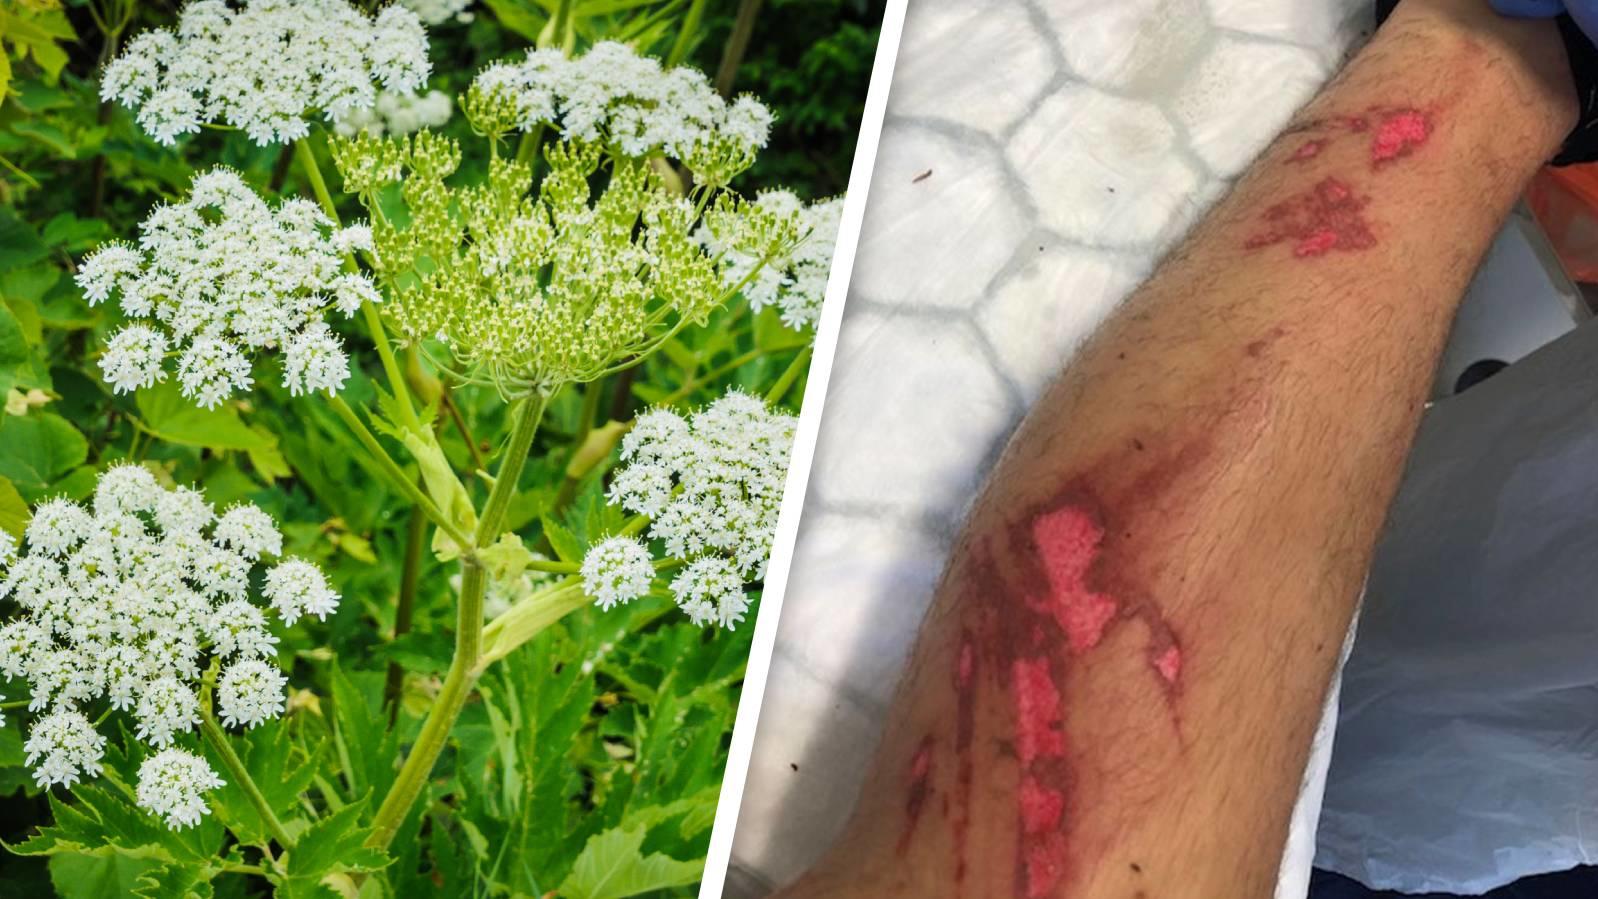 Ein britischer Teenager erlitt schwere Verbrennungen an den Beinen, nachdem er in Kontakt mit Bärenklau gekommen war.